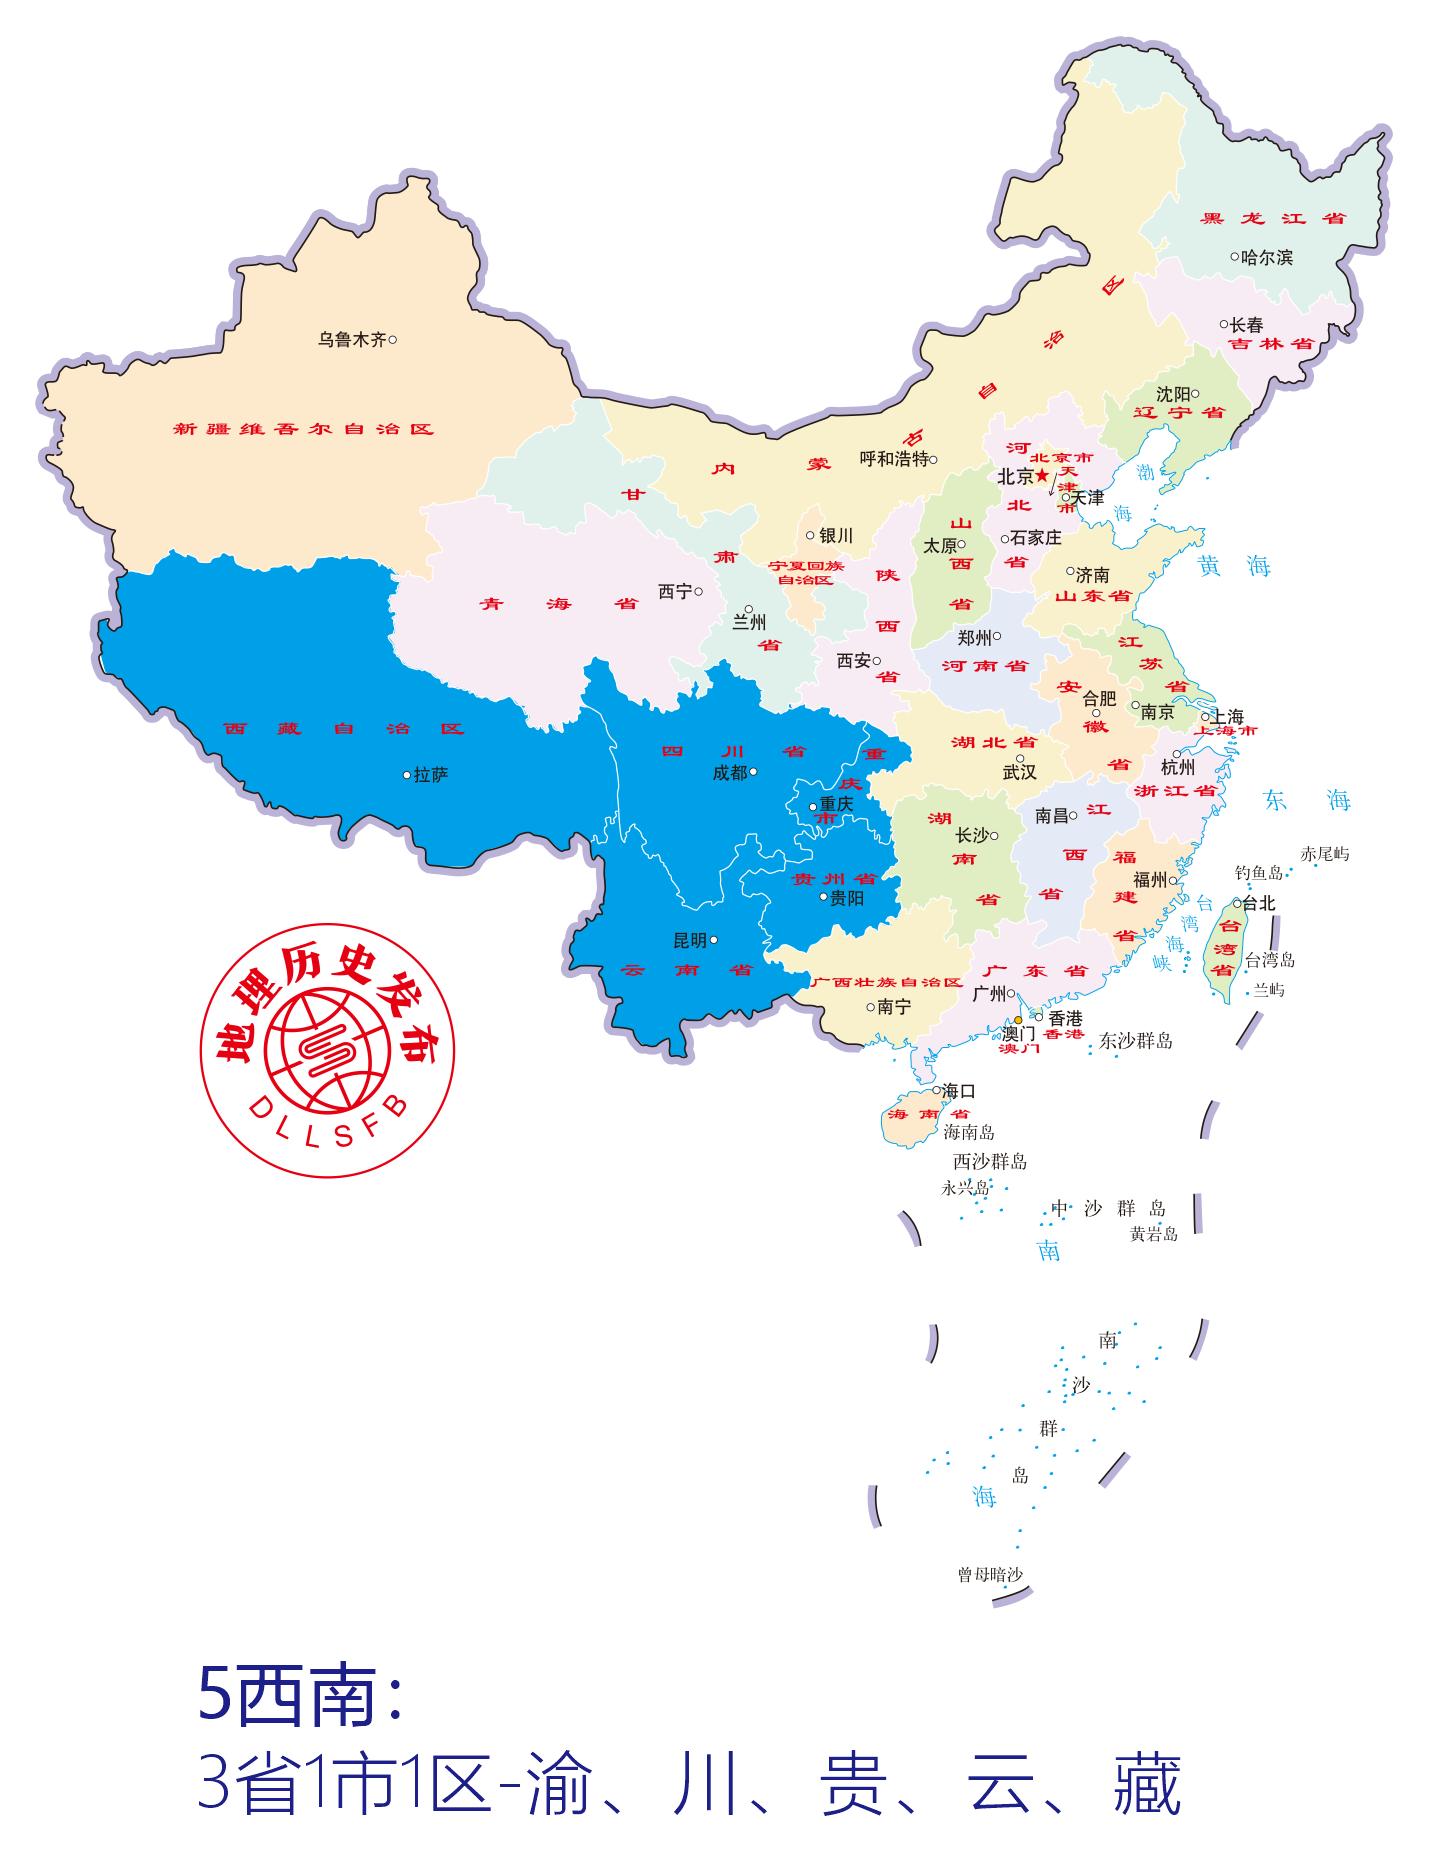 中国行政区划等级、数量、代码及城市分类